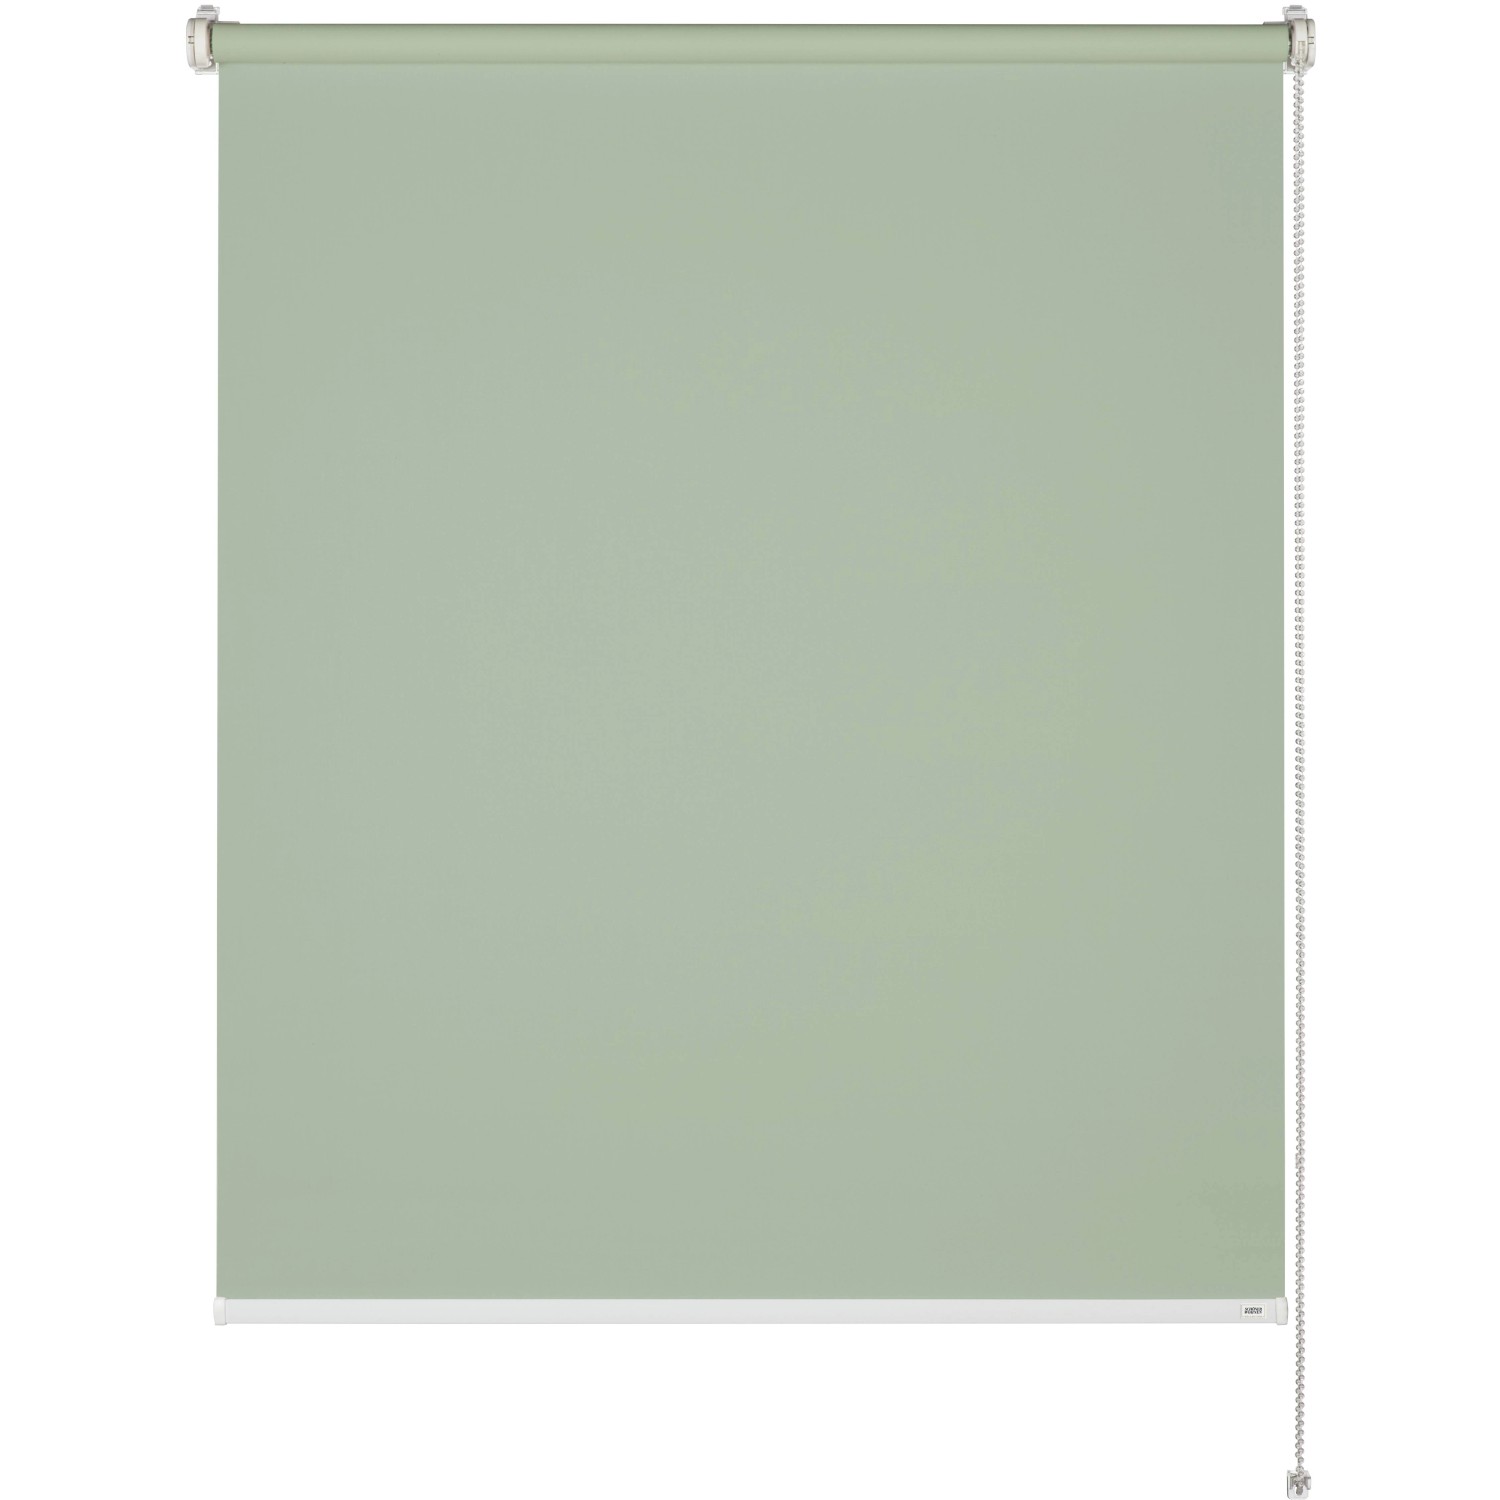 Schöner Wohnen Tageslicht-Rollo Tizia 45 cm x 150 cm Grün